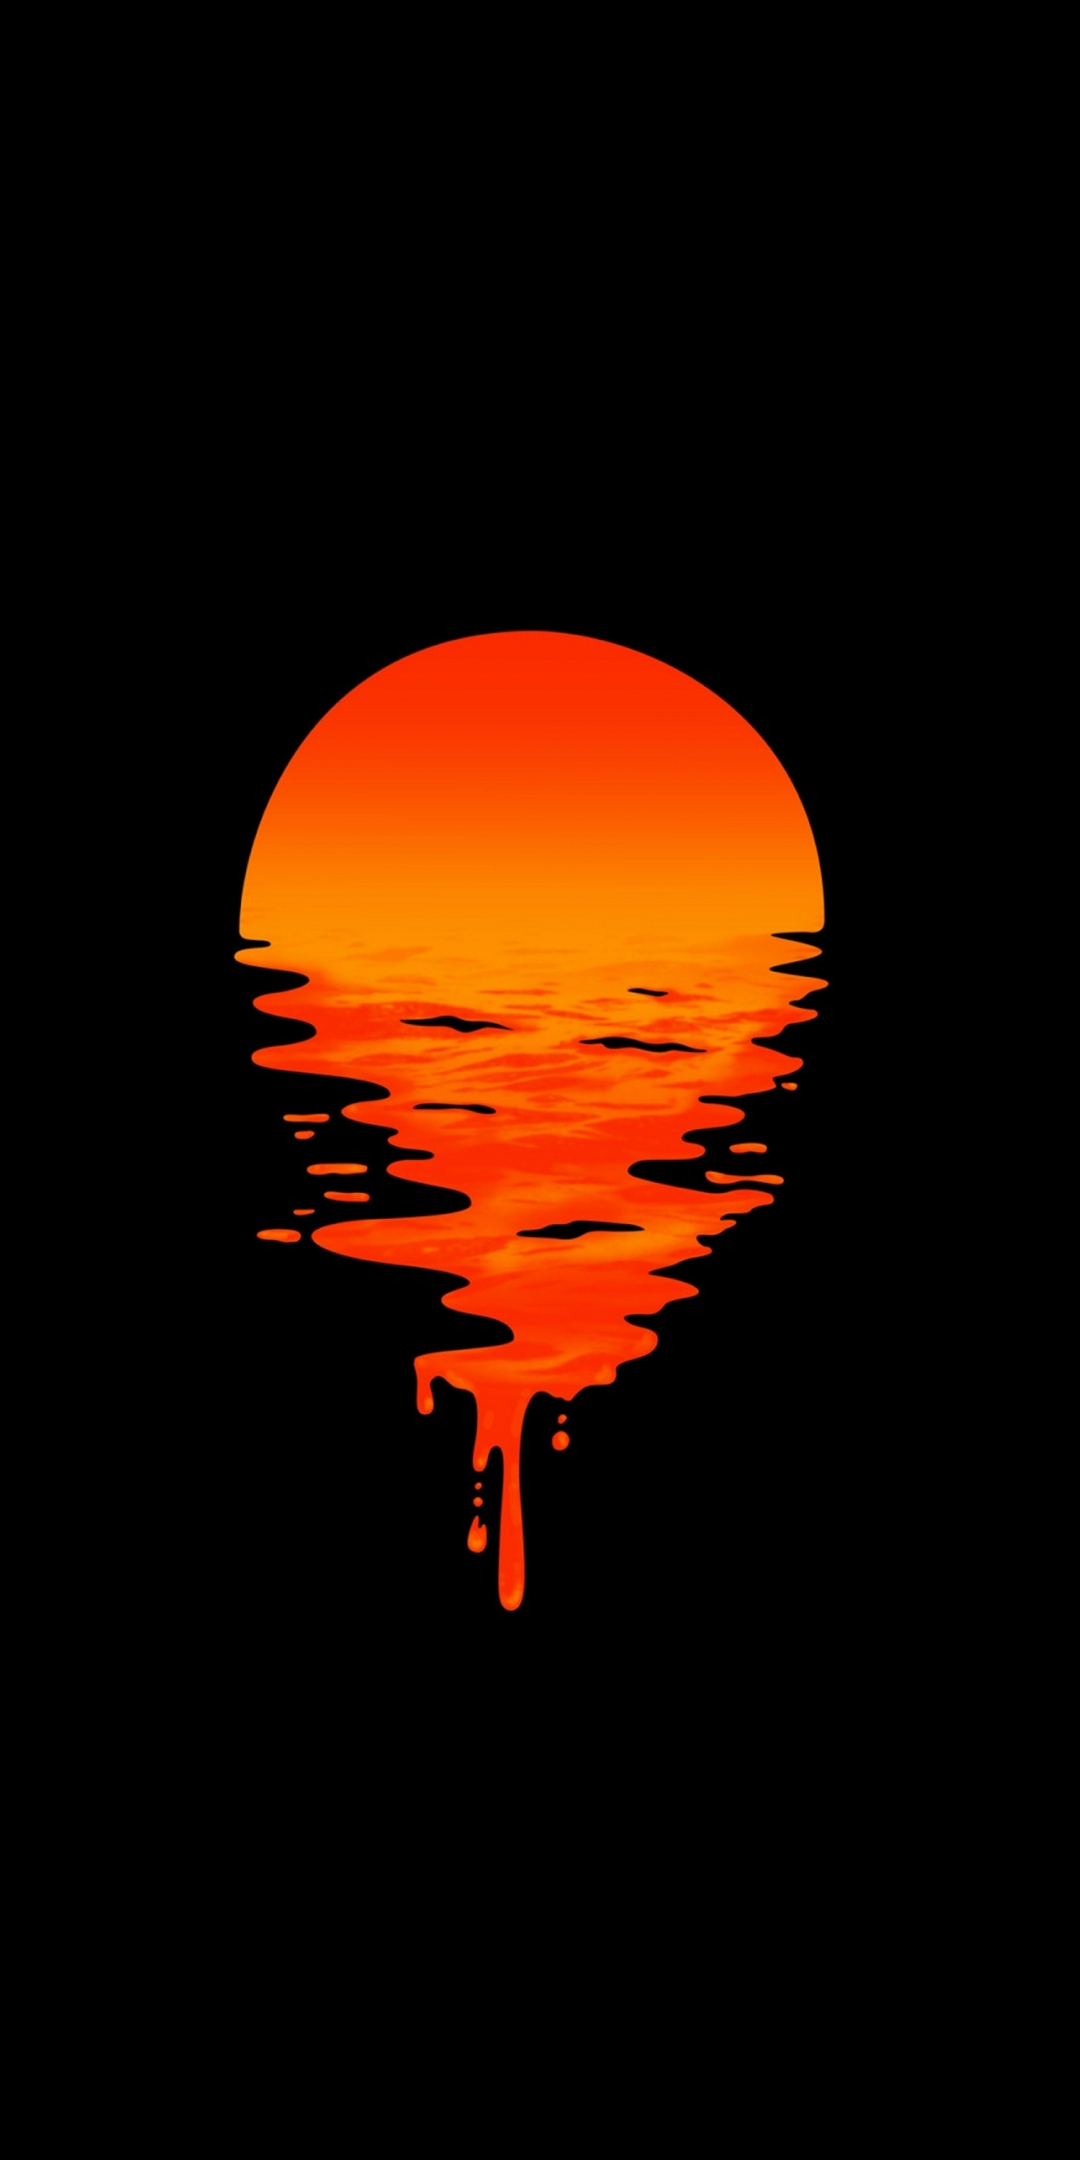 Lake, sunset, orange, minimal, dark, 1080x2160 wallpaper